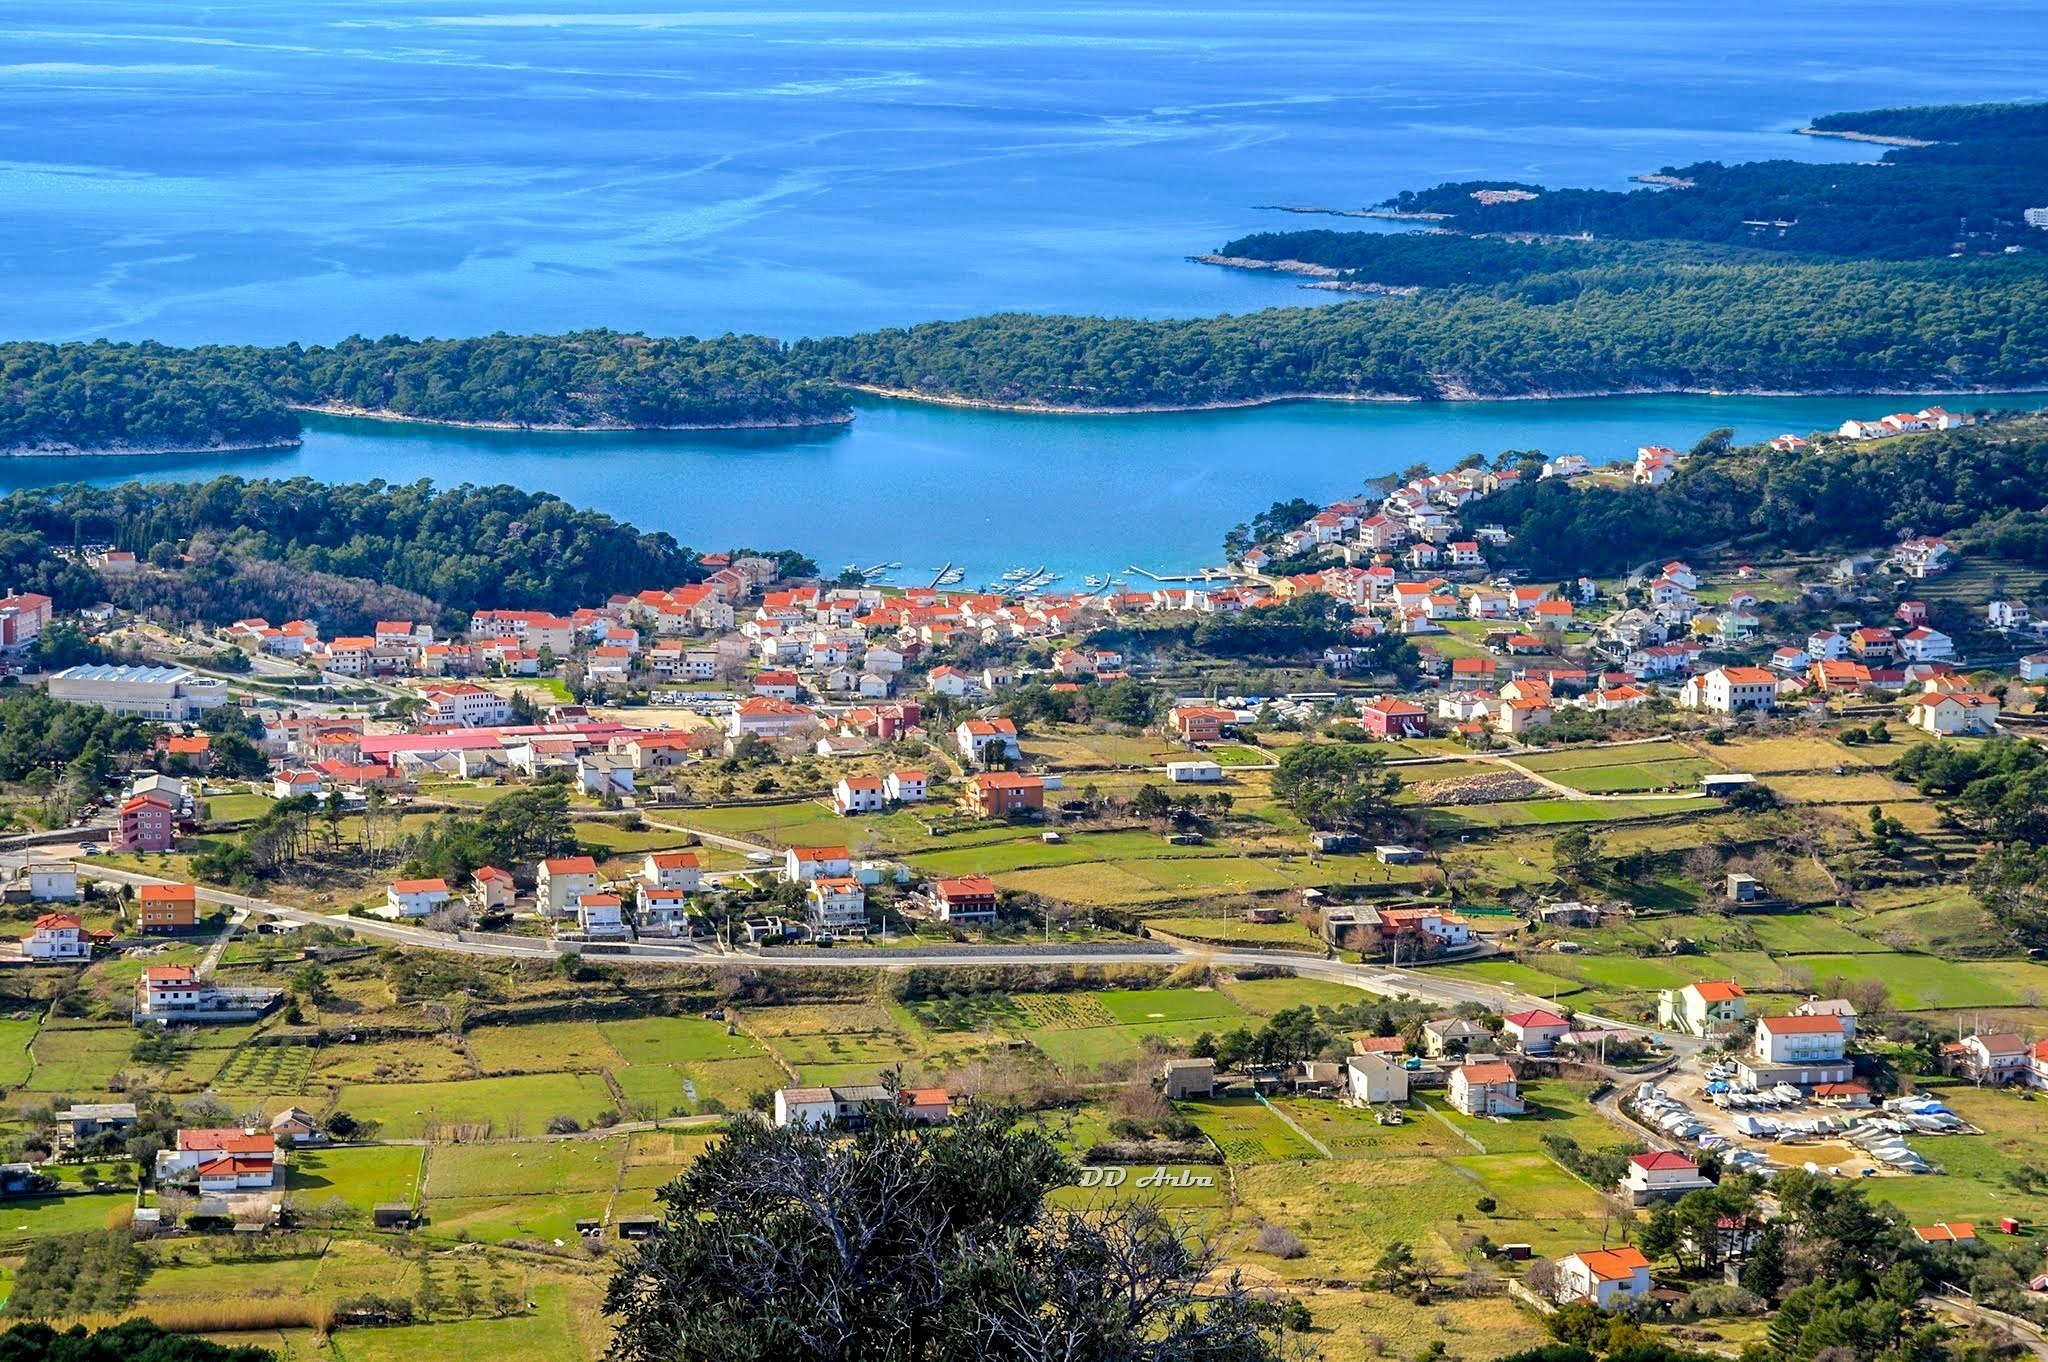 The island of Rab, Croatia